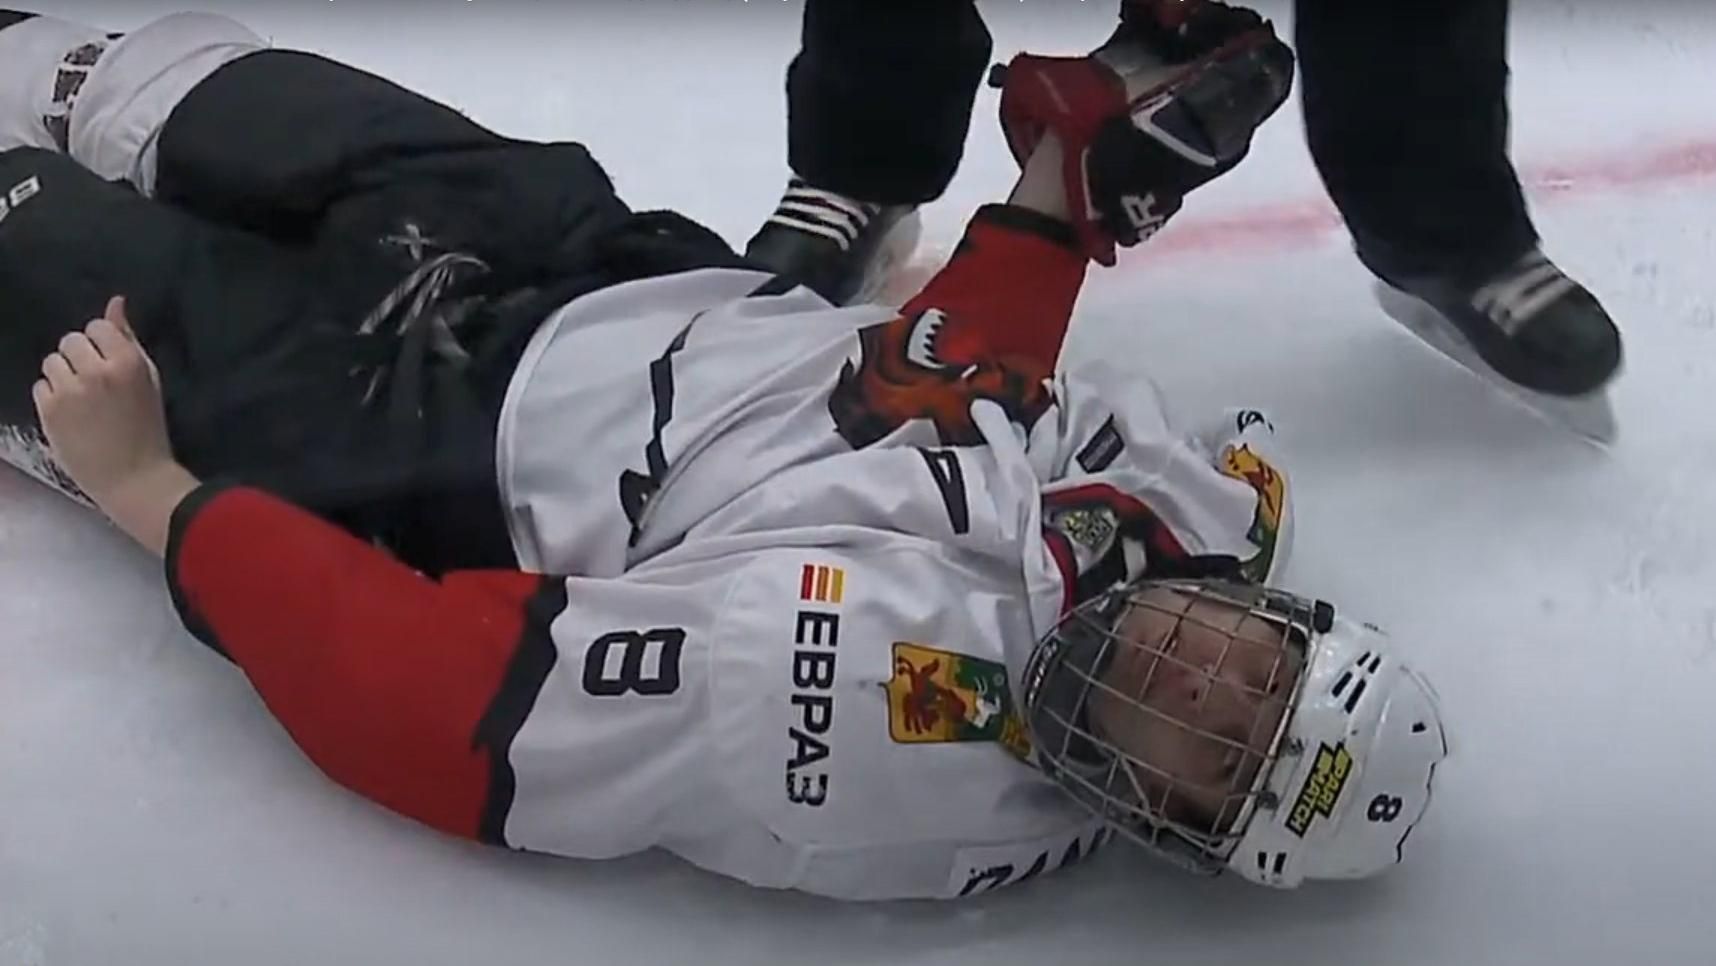 Російський хокеїст вдарив головою об лід суперника, який втратив свідомість: відео